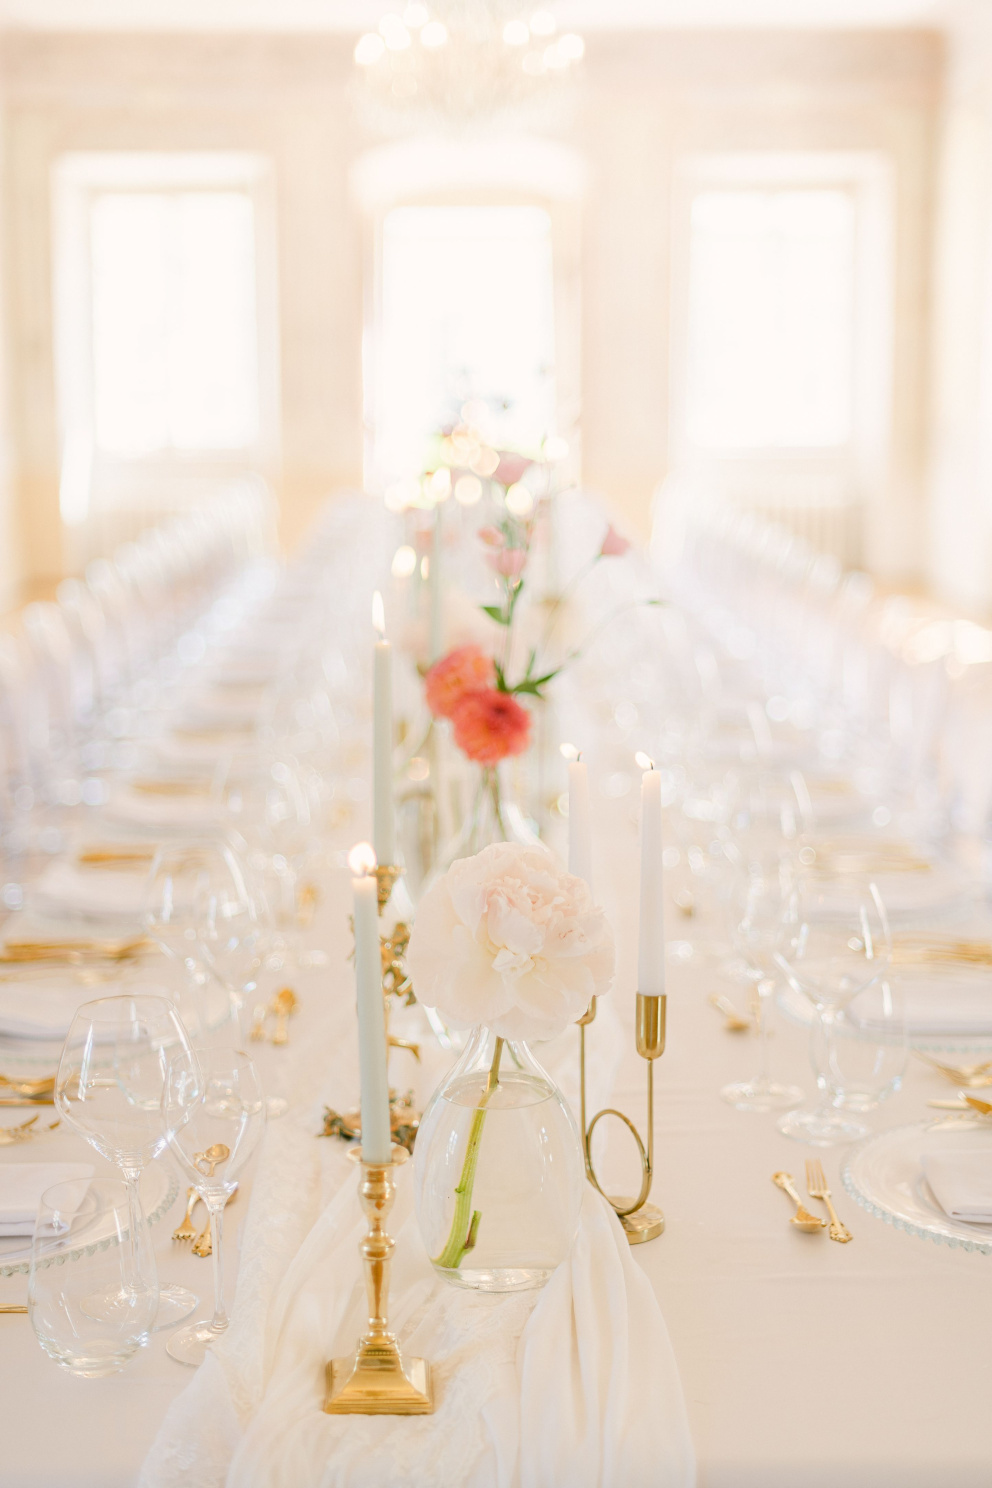 Ukázka minimalistické výzdoby. Základem je bílý ubrus, který doplňují vázy s čerstvými květinami. Jednoduché a elegantní. Foto: Matěj Třasák. Výzdoba: Ivan Šablatúra.
